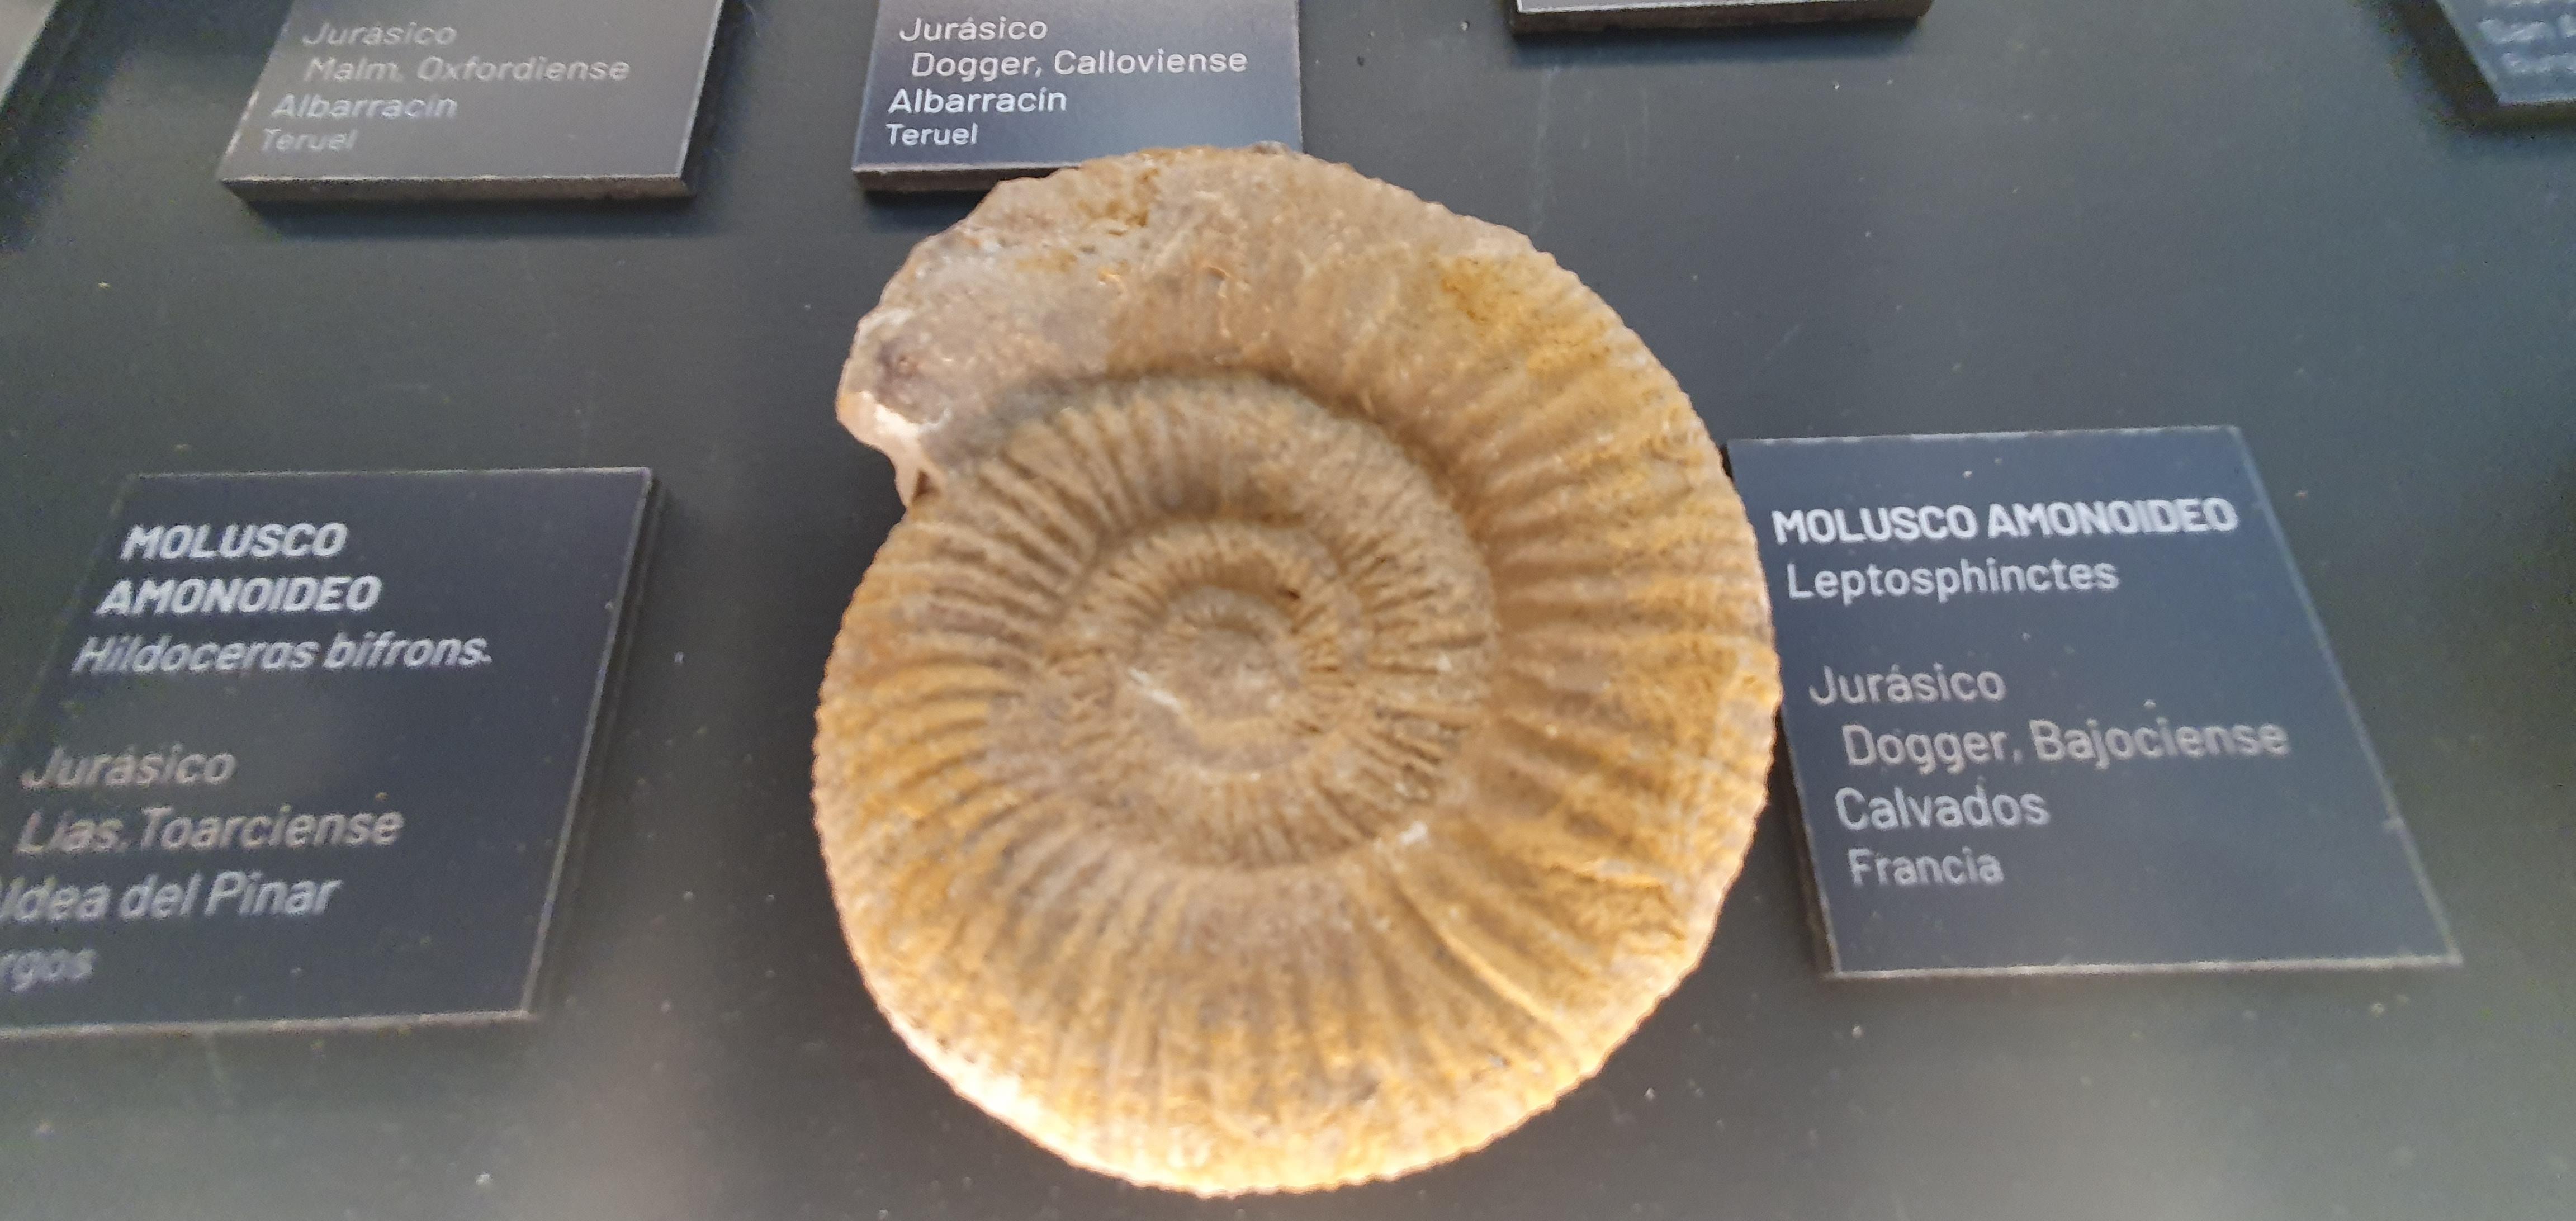 Fossilium Villamuriel de Cerrato1